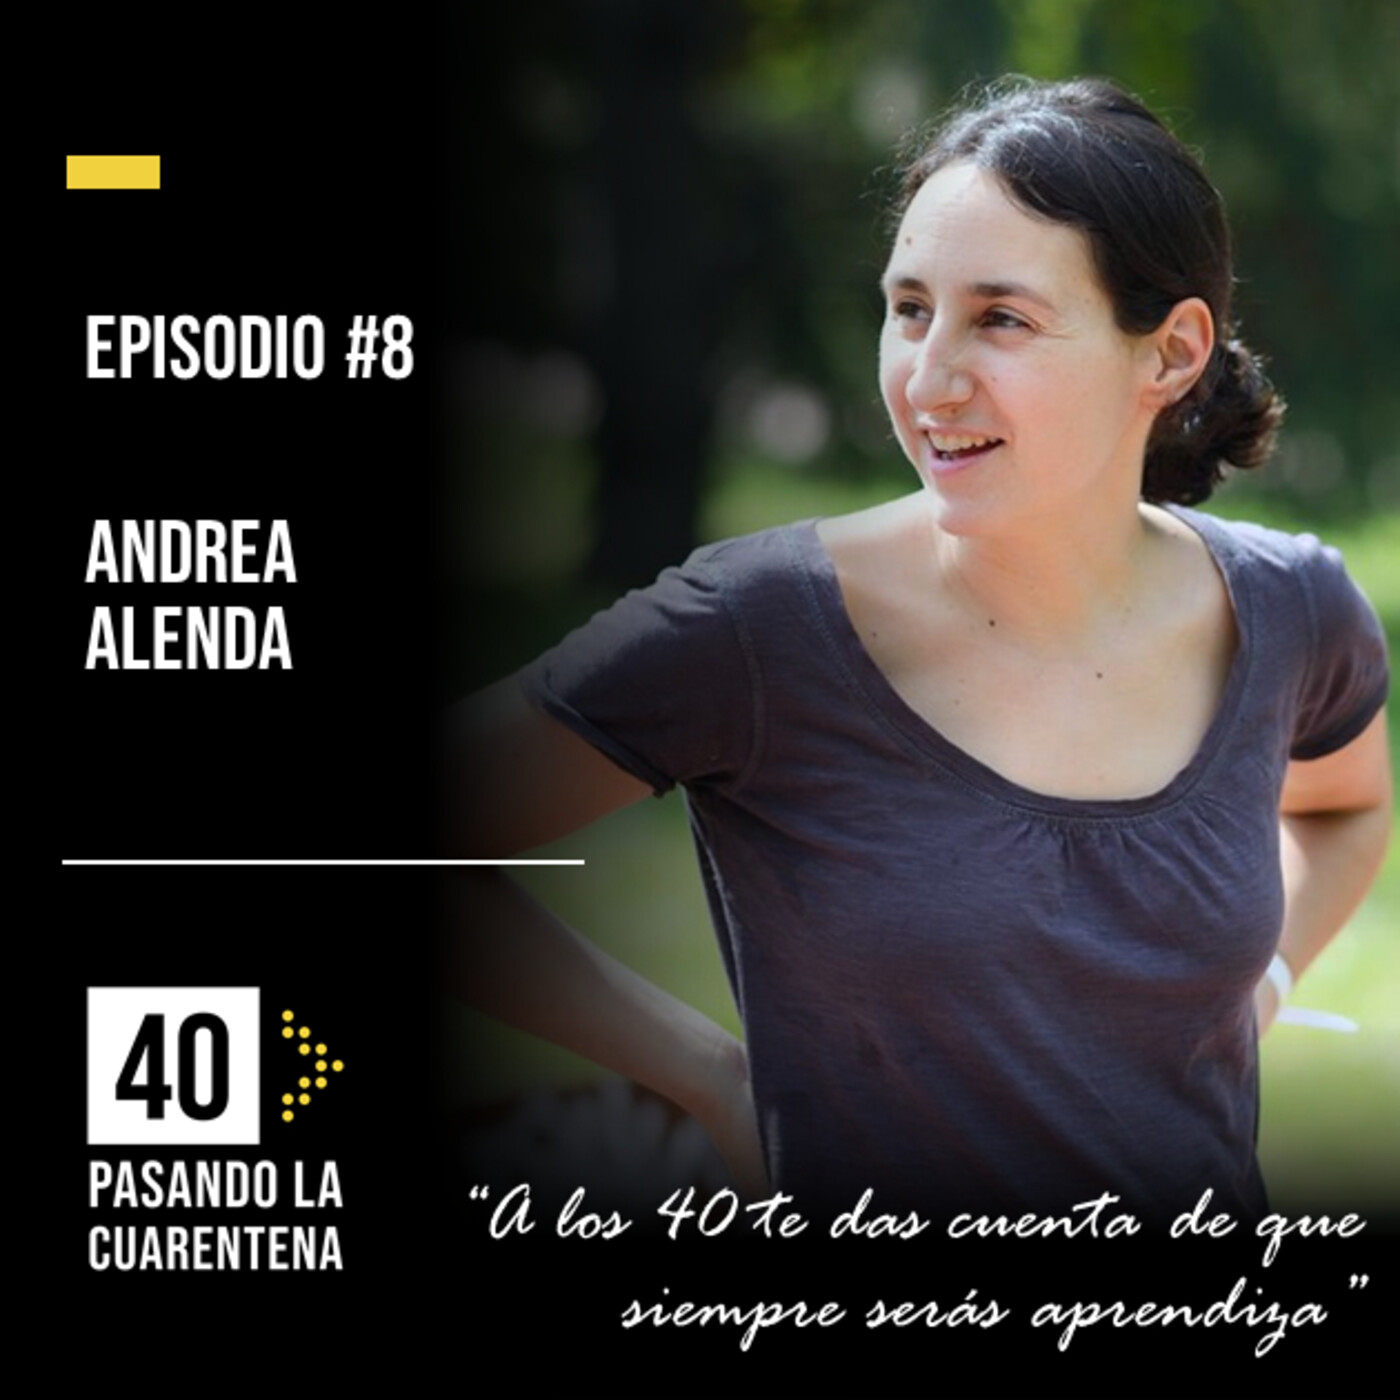 #8 Andrea Alenda: "A los 40 te das cuenta de que siempre serás aprendiza"